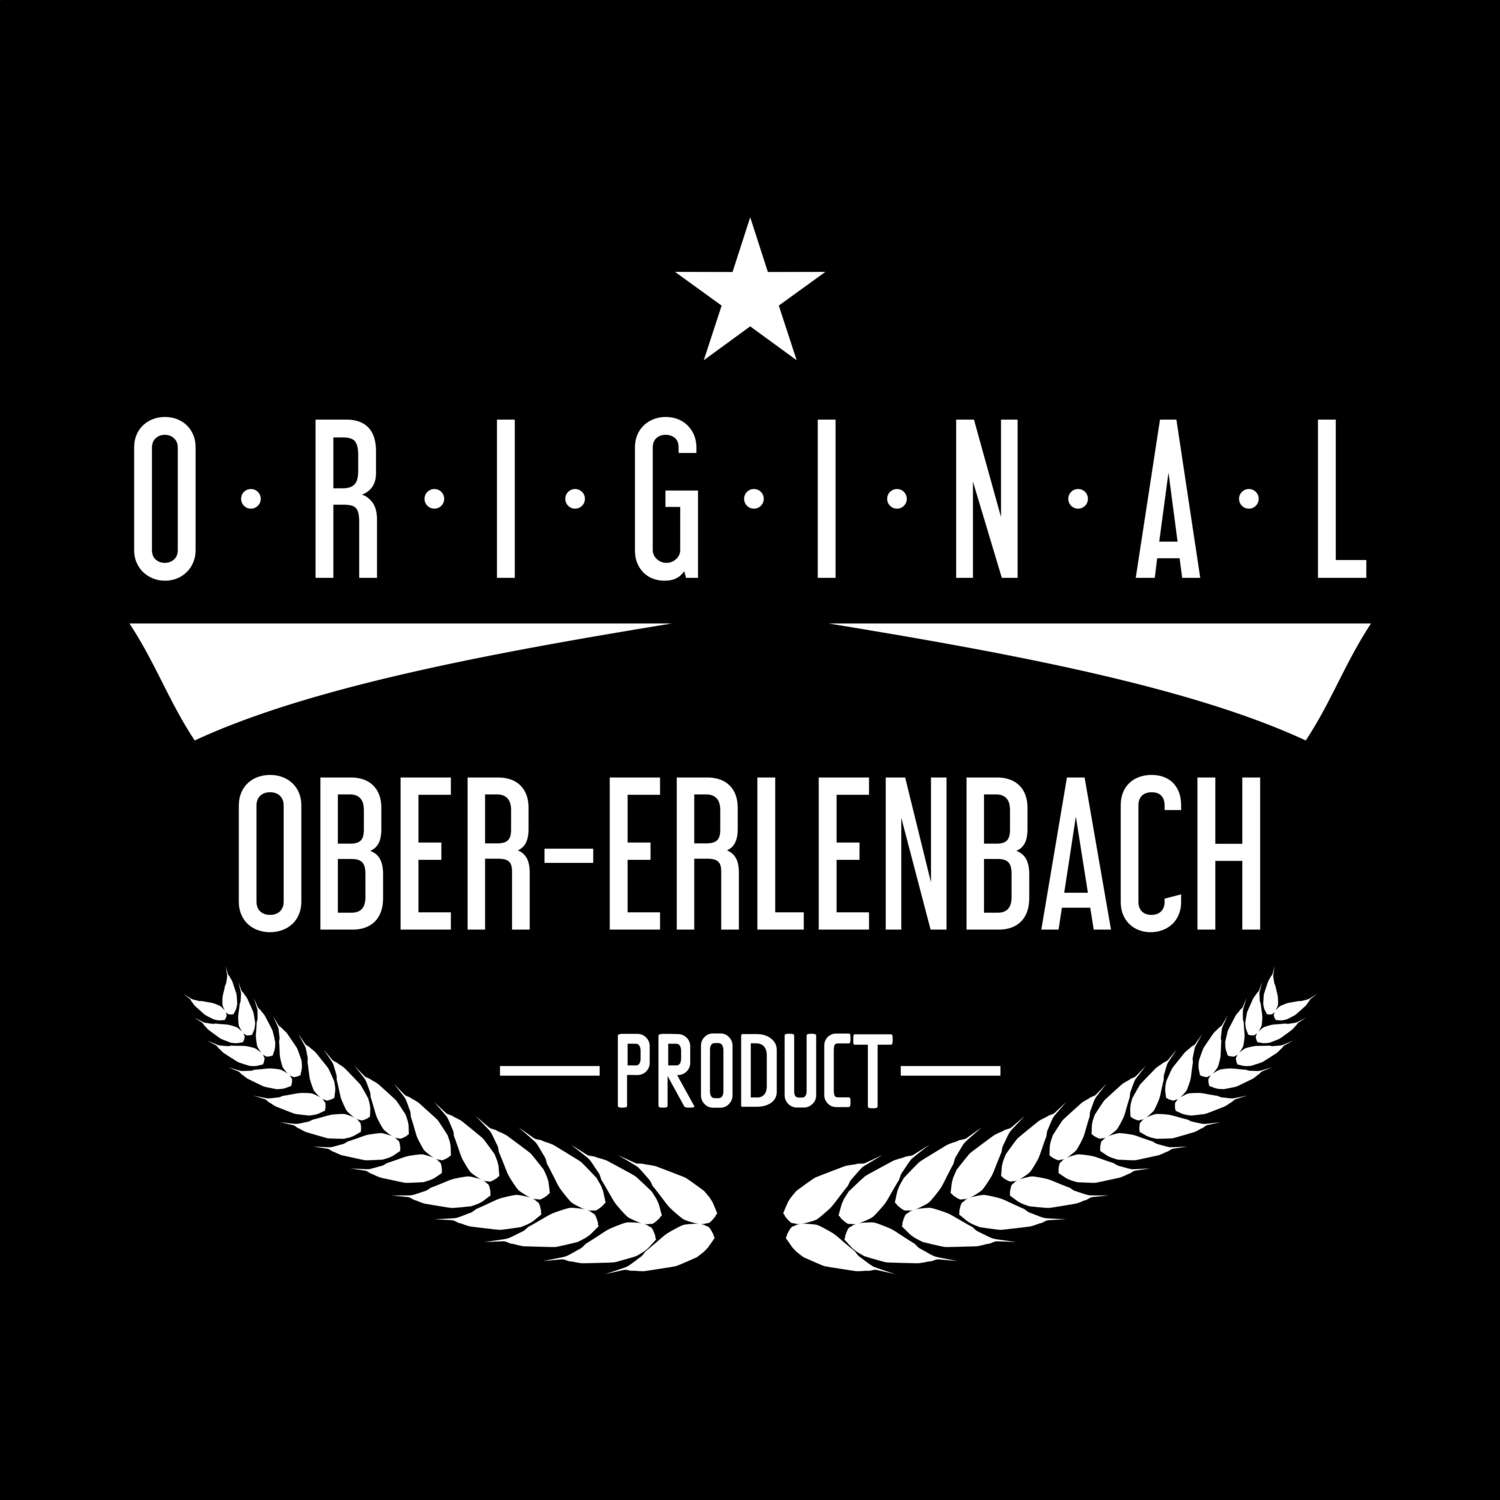 Ober-Erlenbach T-Shirt »Original Product«